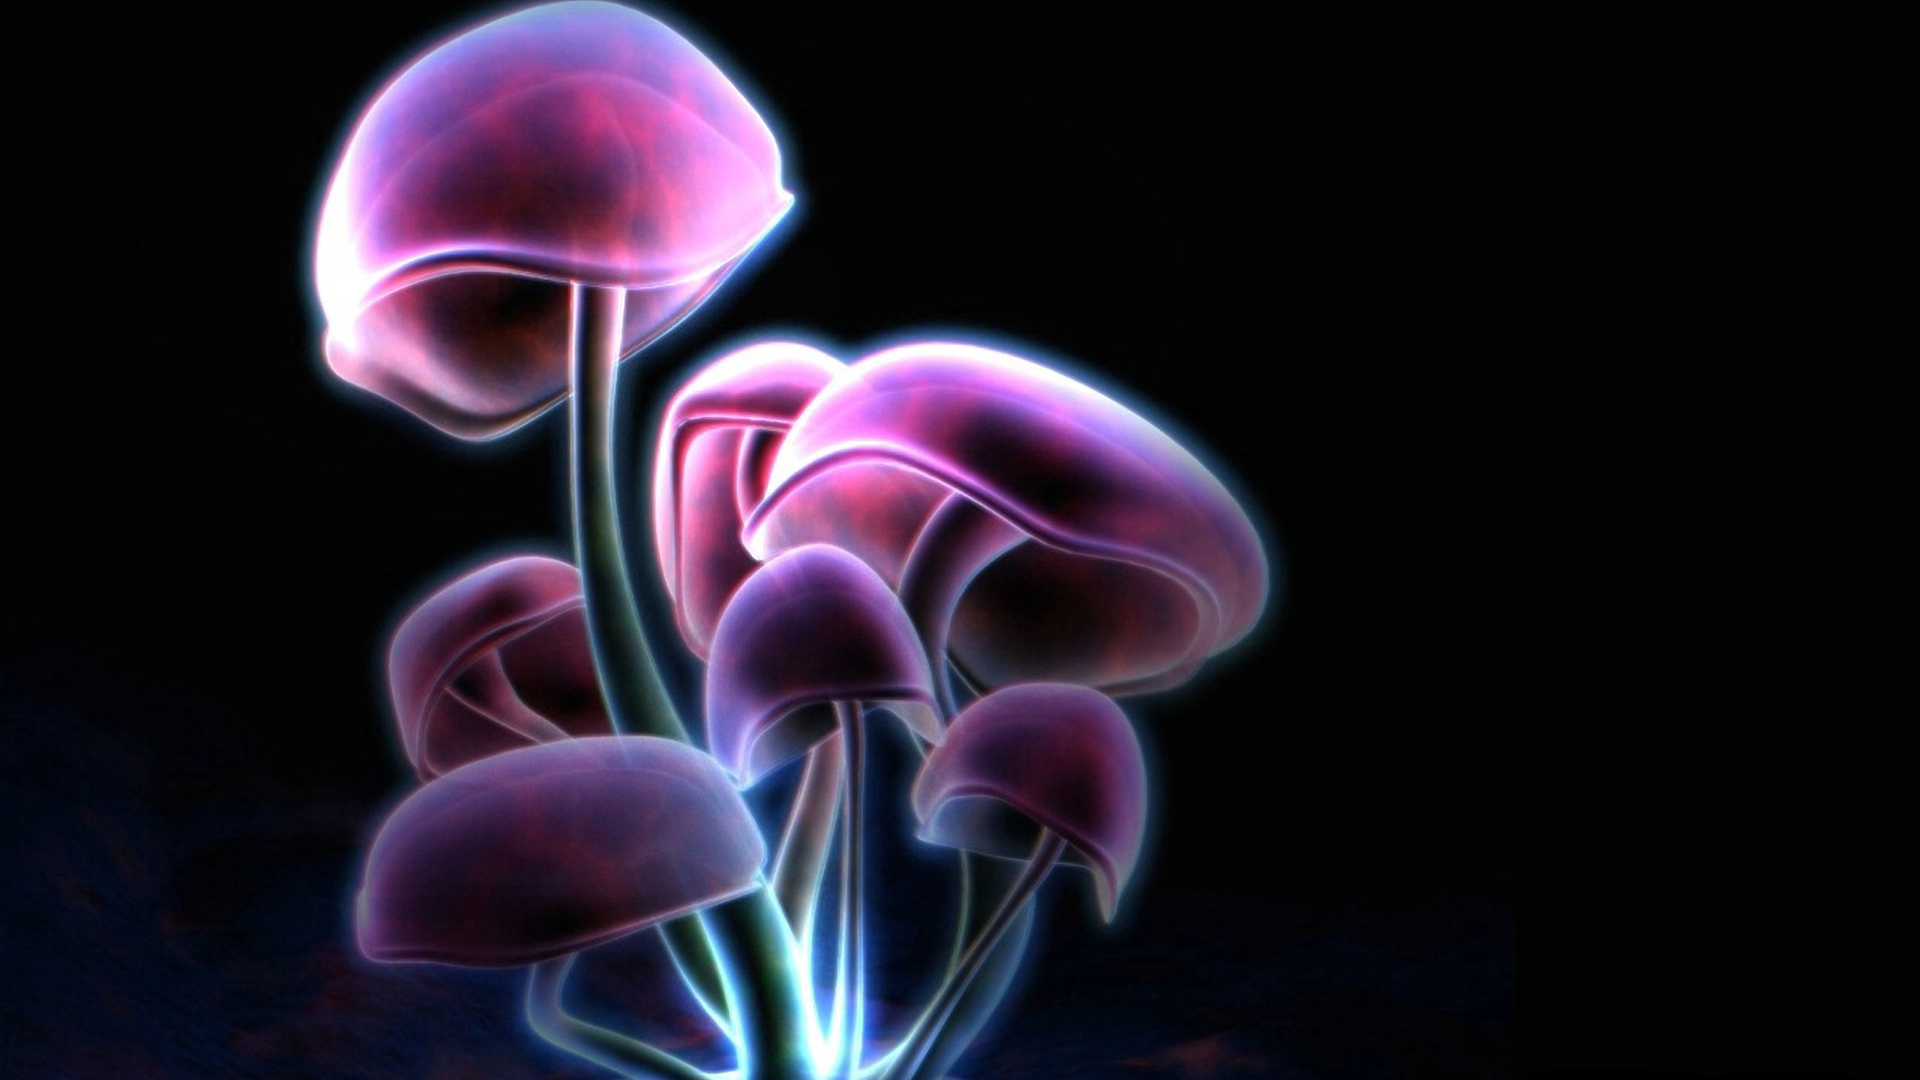 Фиолетовые грибы